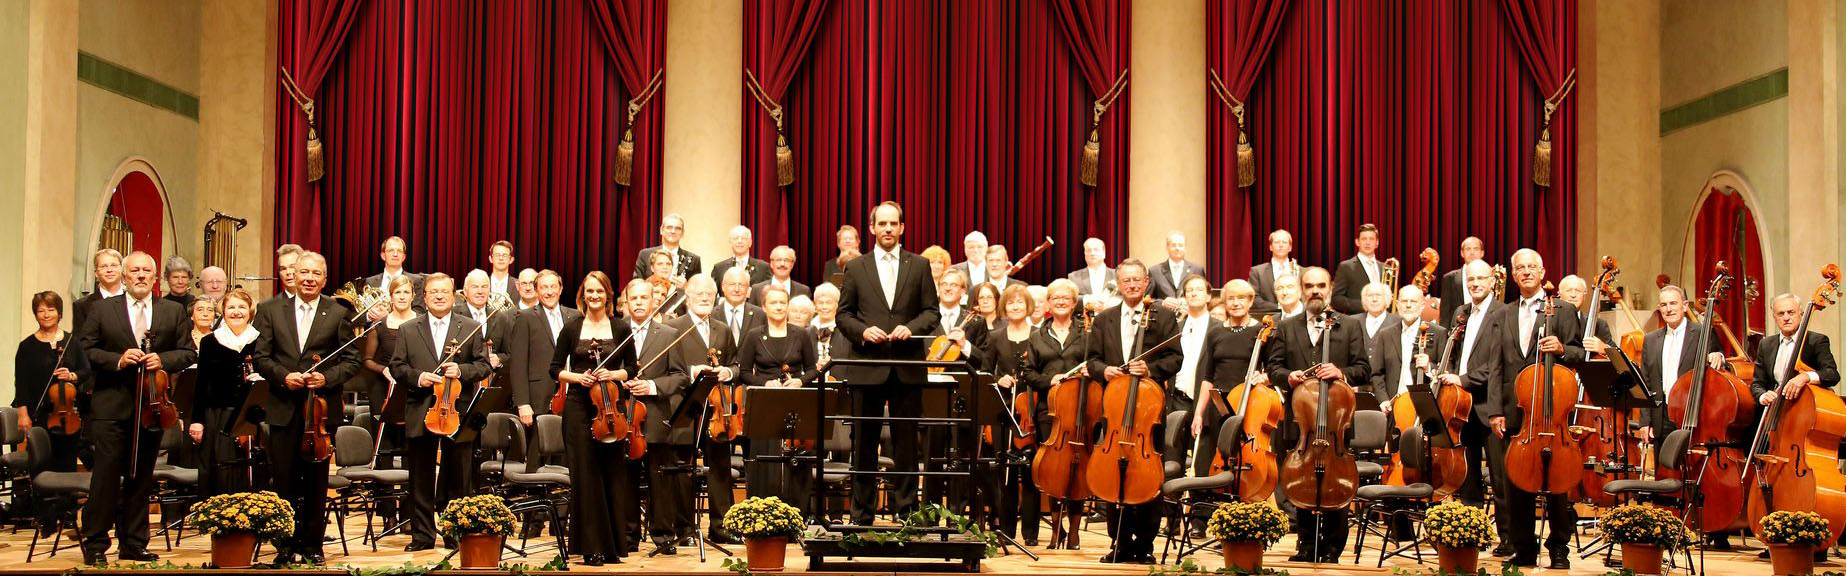 Rotary-Orchester Deutschland e.V.